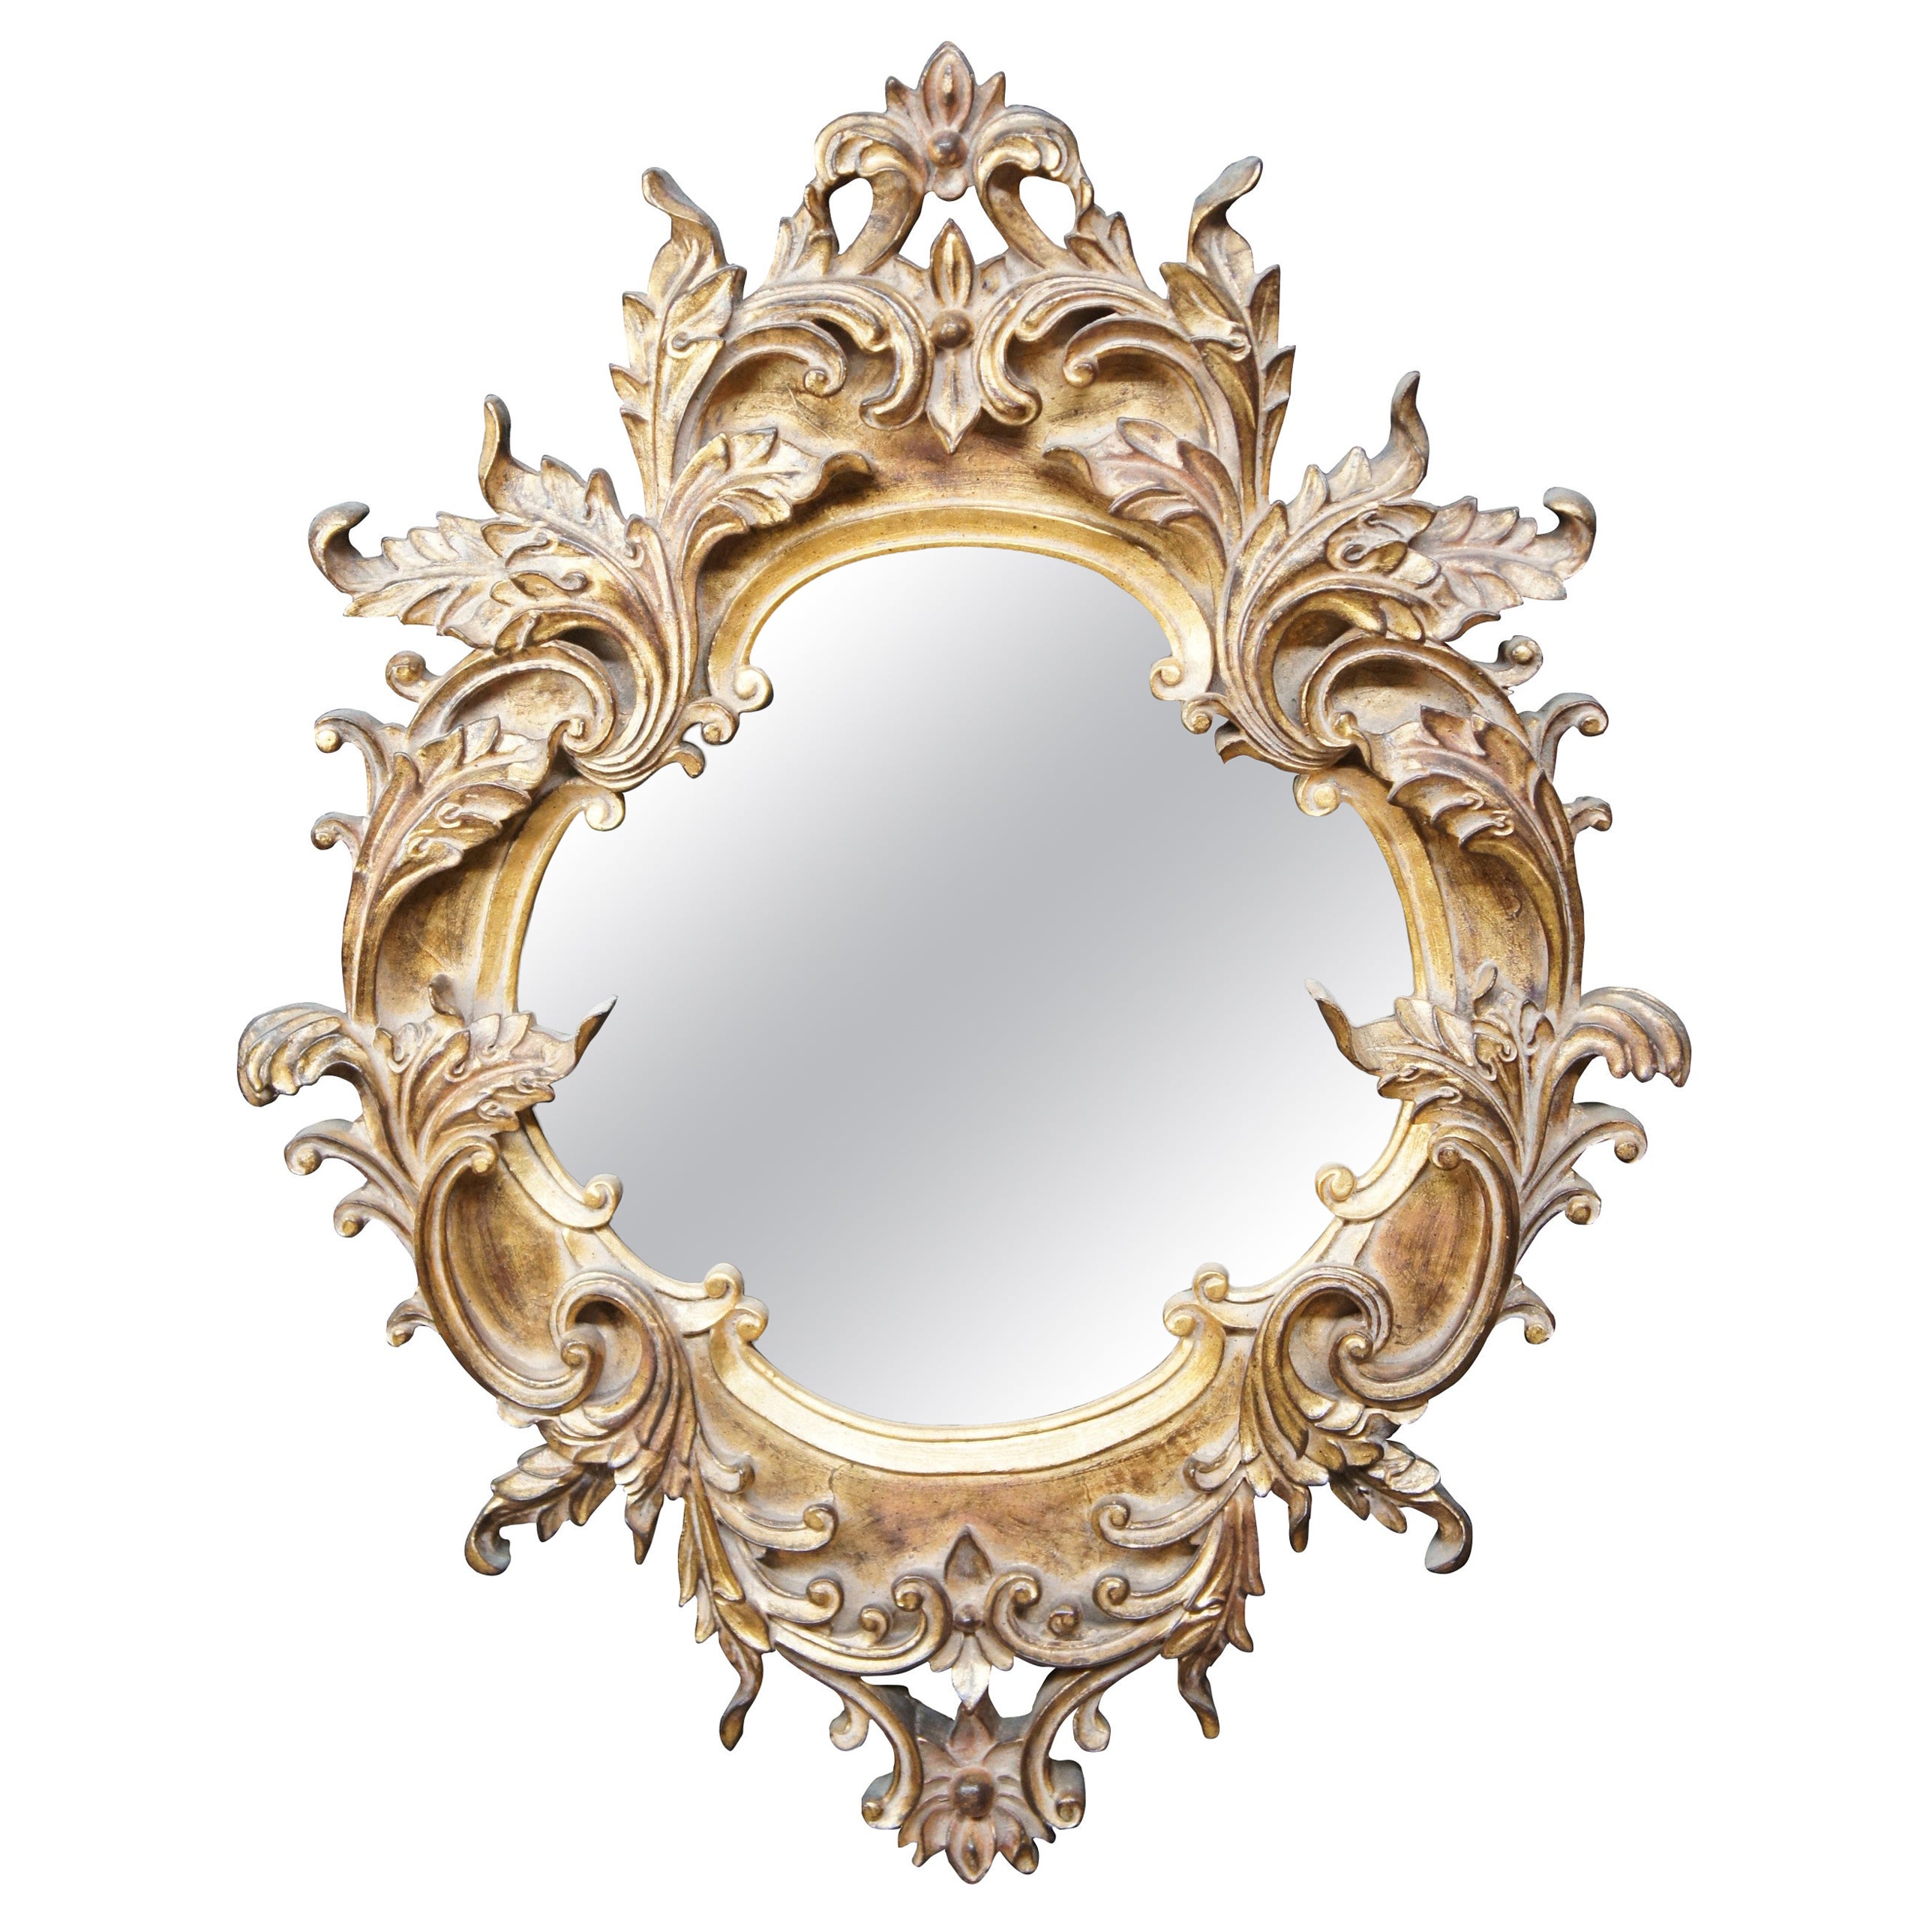 Raschella Collection Italian Regency Baroque Rococo Gold Gilt Wall Vanity Mirror For Sale